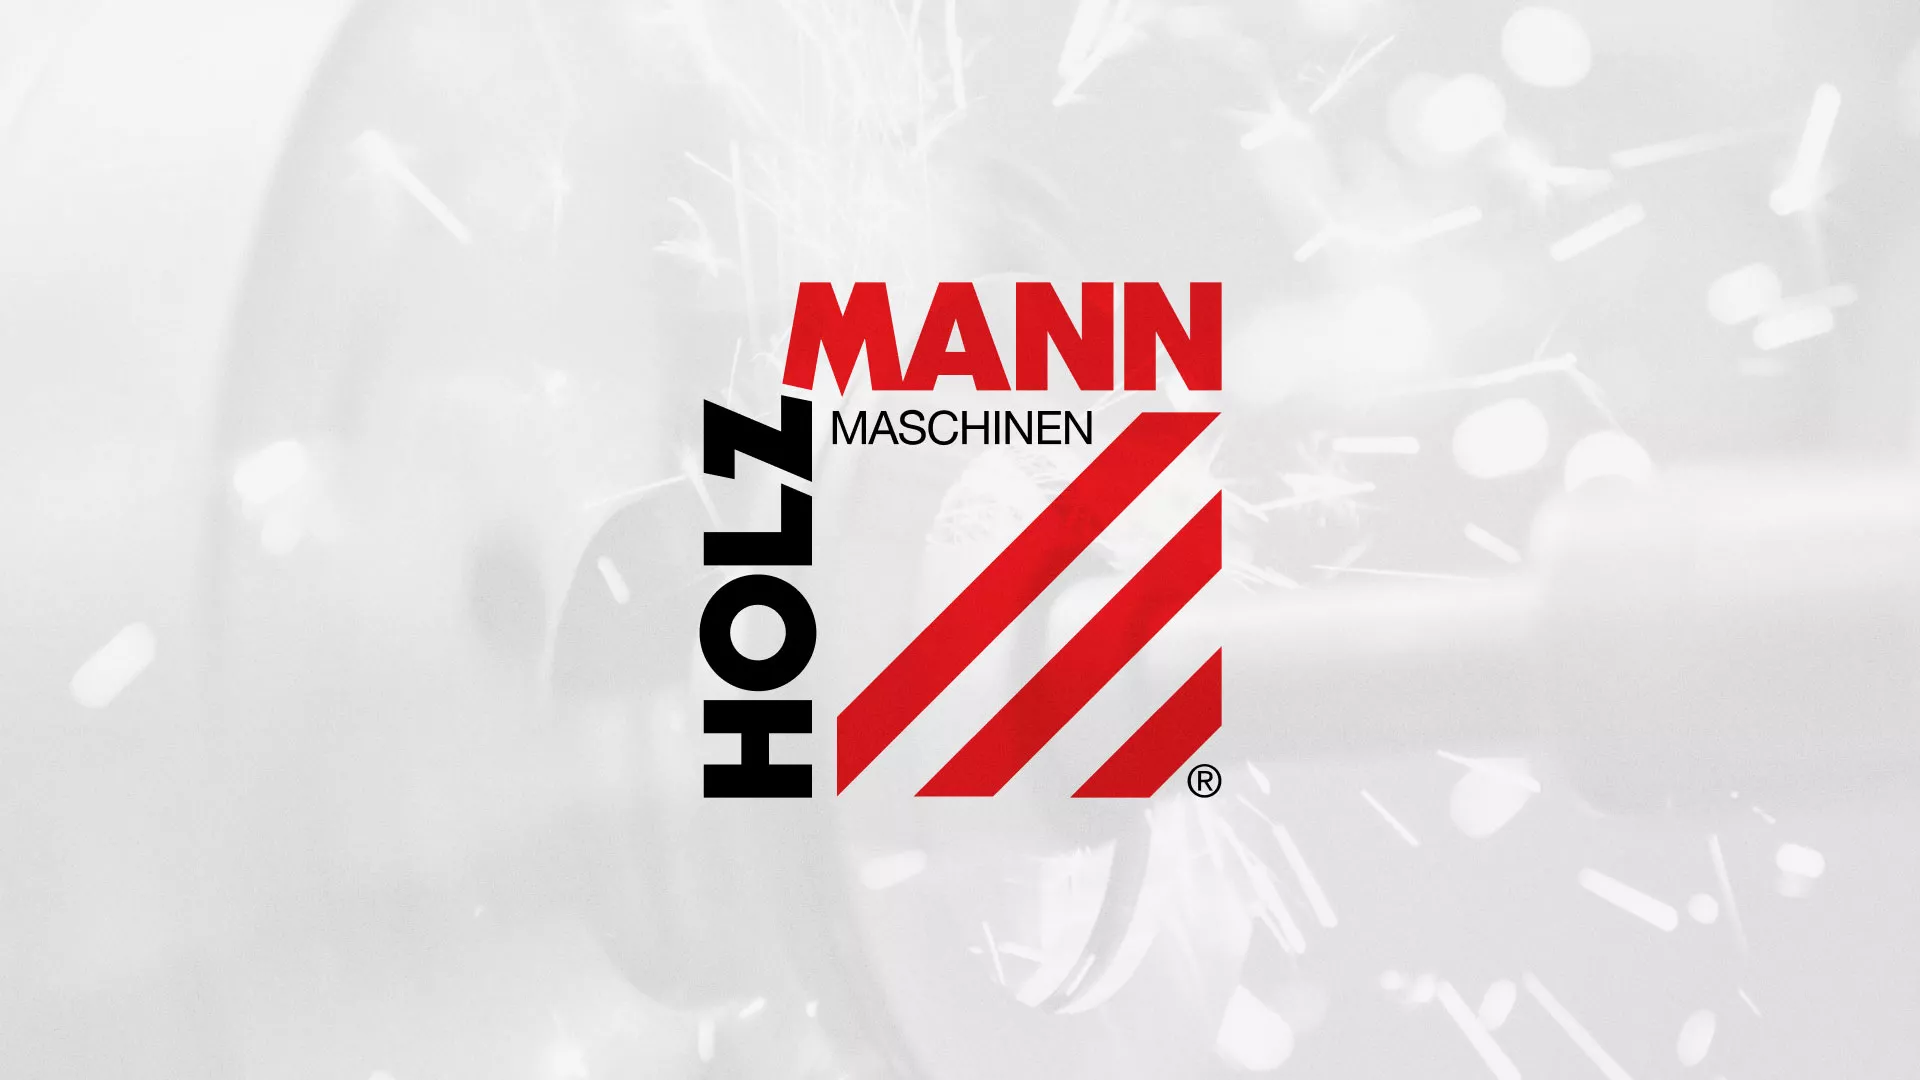 Создание сайта компании «HOLZMANN Maschinen GmbH» в Усолье-Сибирском